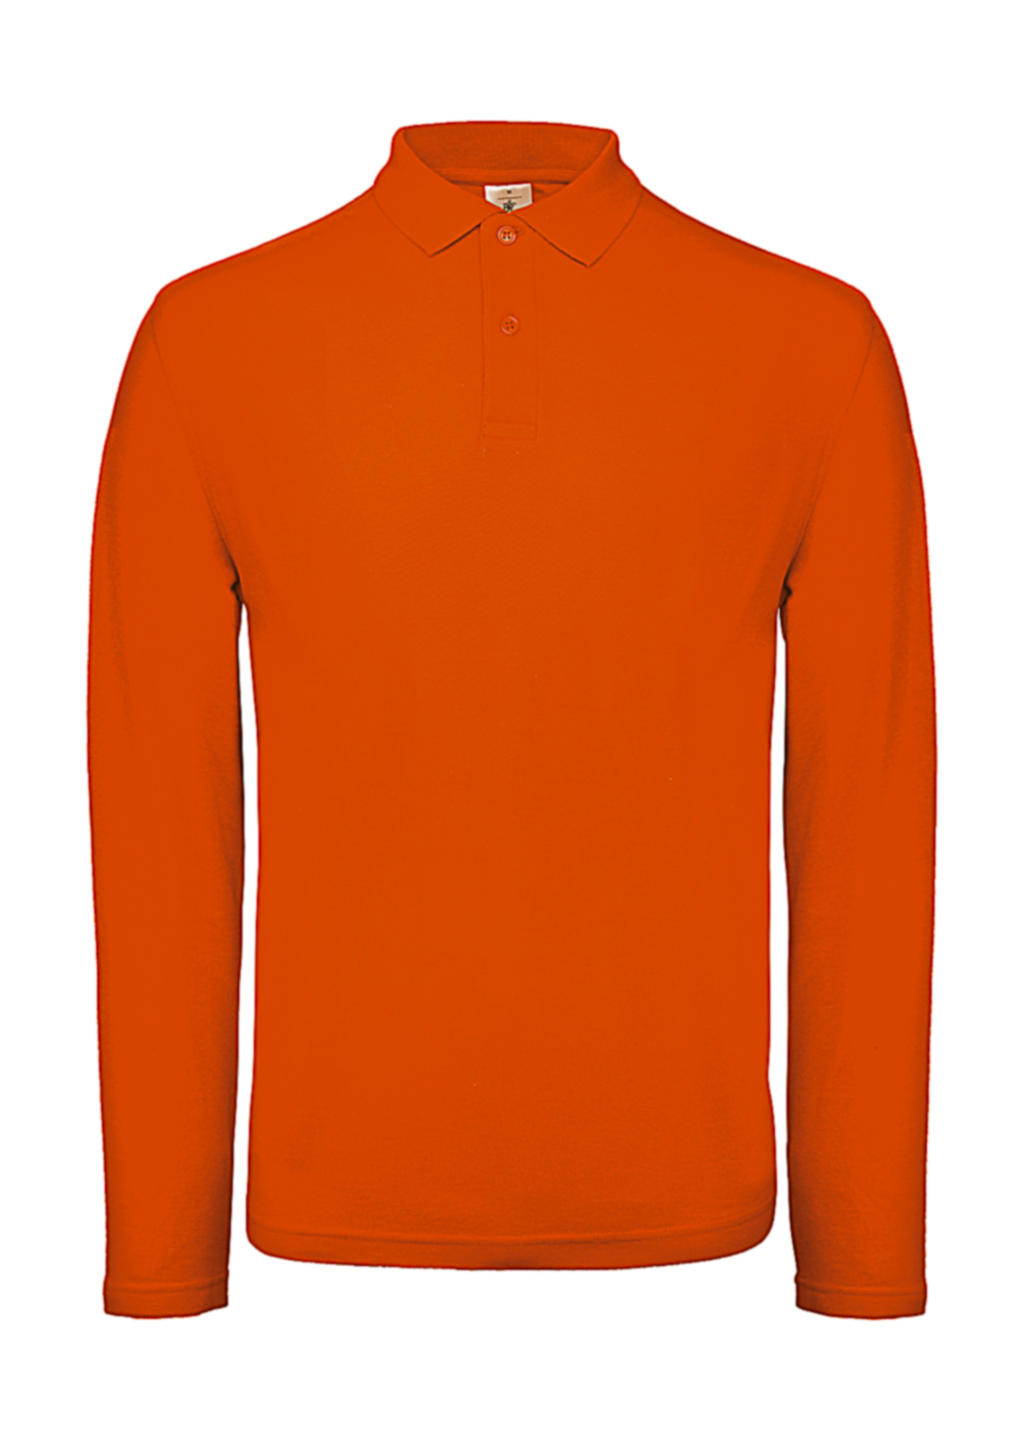  ID.001 LSL Polo in Farbe Orange